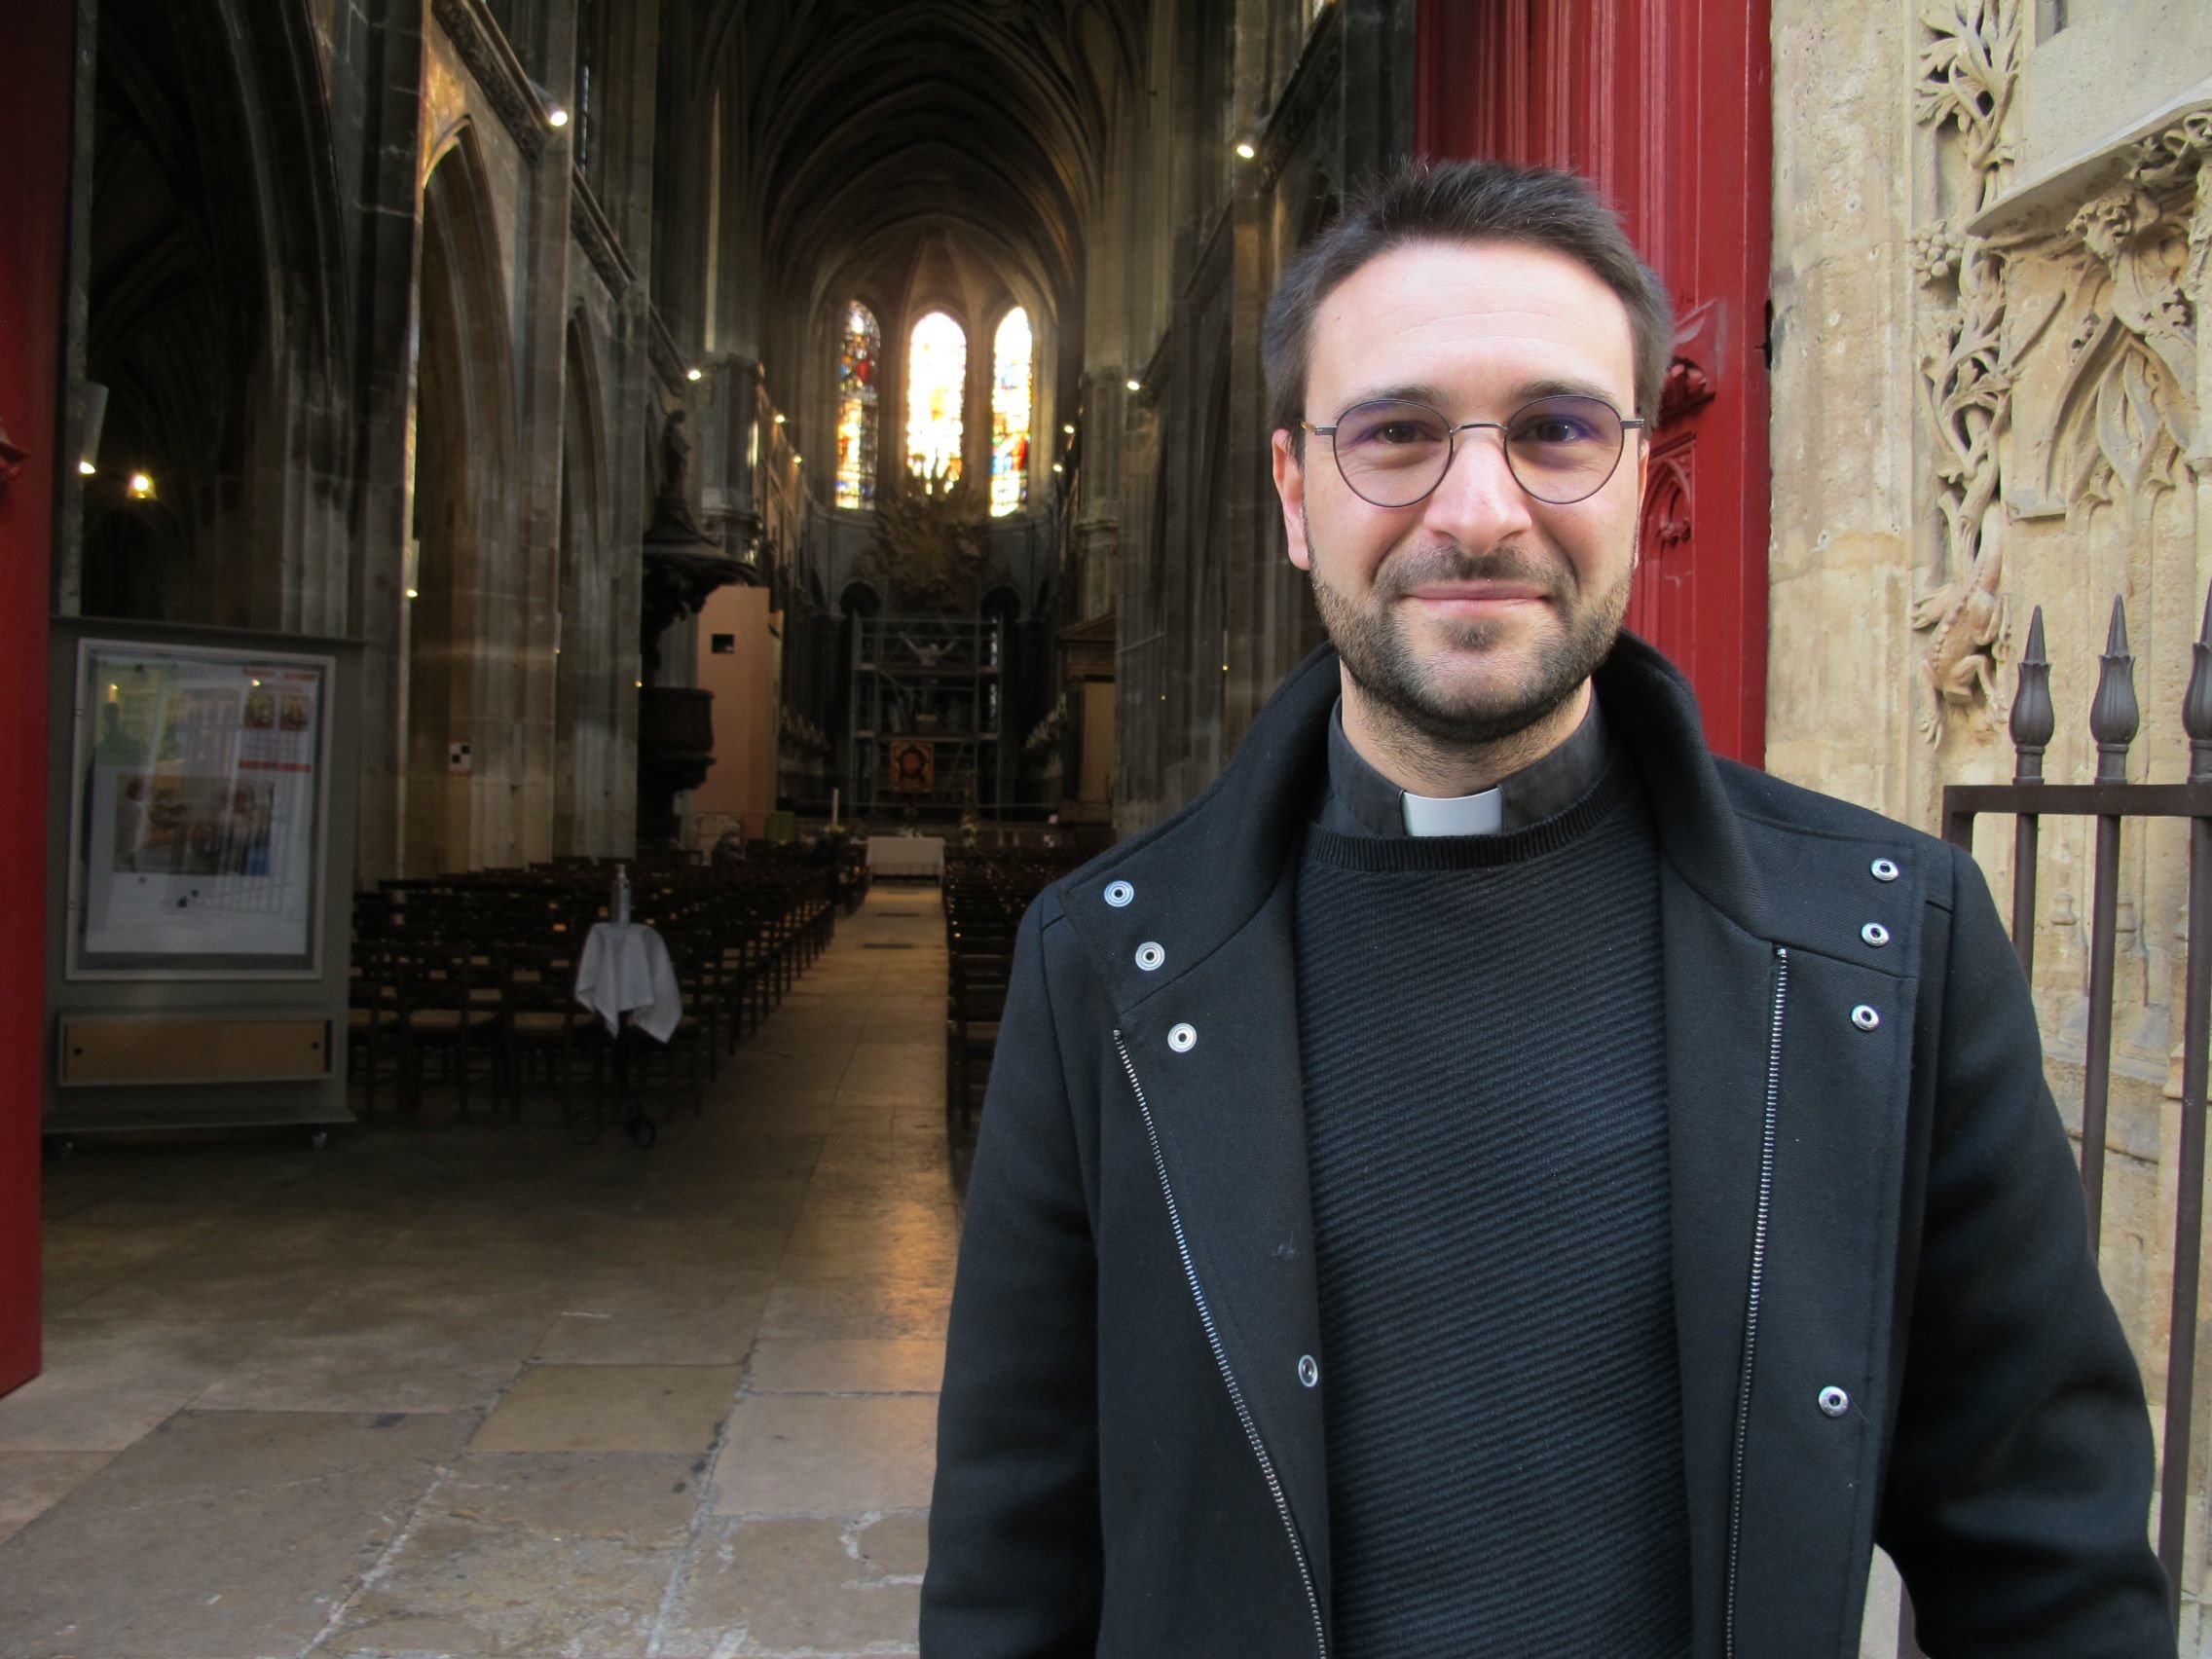 Agé de 32 ans, Philippe Perraud, curé de Saint Merry (IVe) depuis le 1er septembre 2021, a été ordonné prêtre en septembre 2019 à Rome.